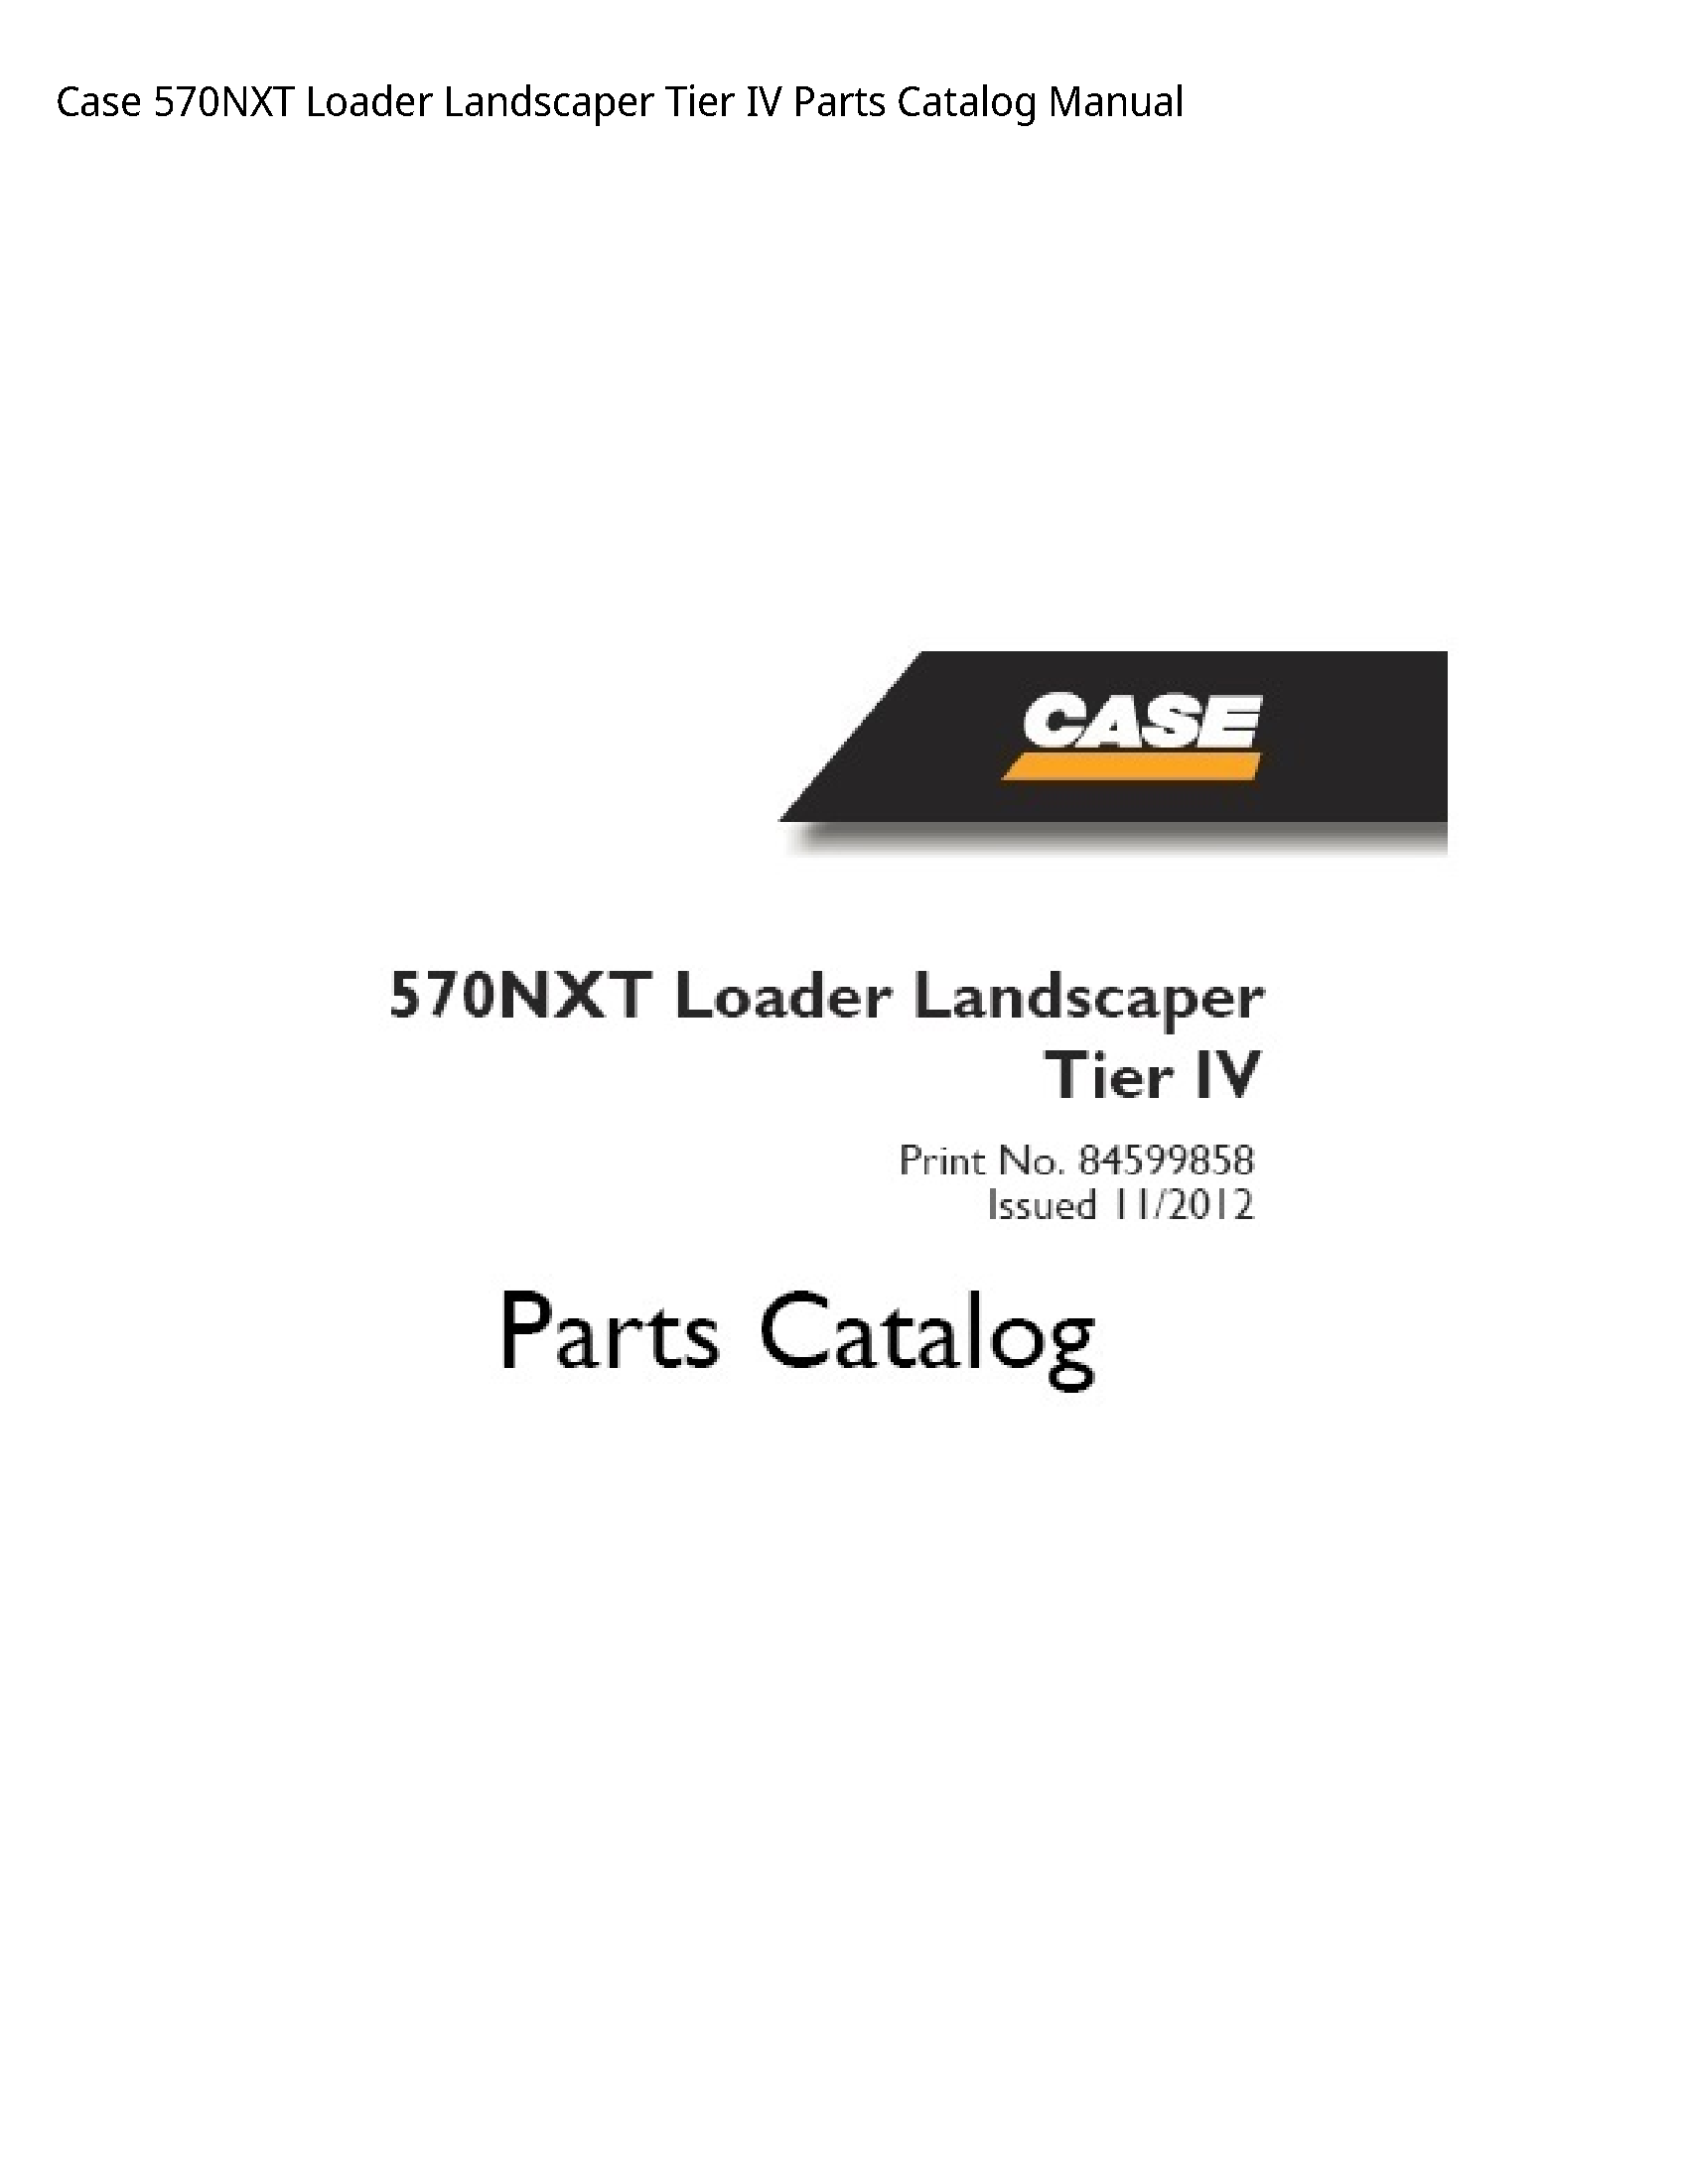 Case/Case IH 570NXT Loader Landscaper Tier IV Parts Catalog manual